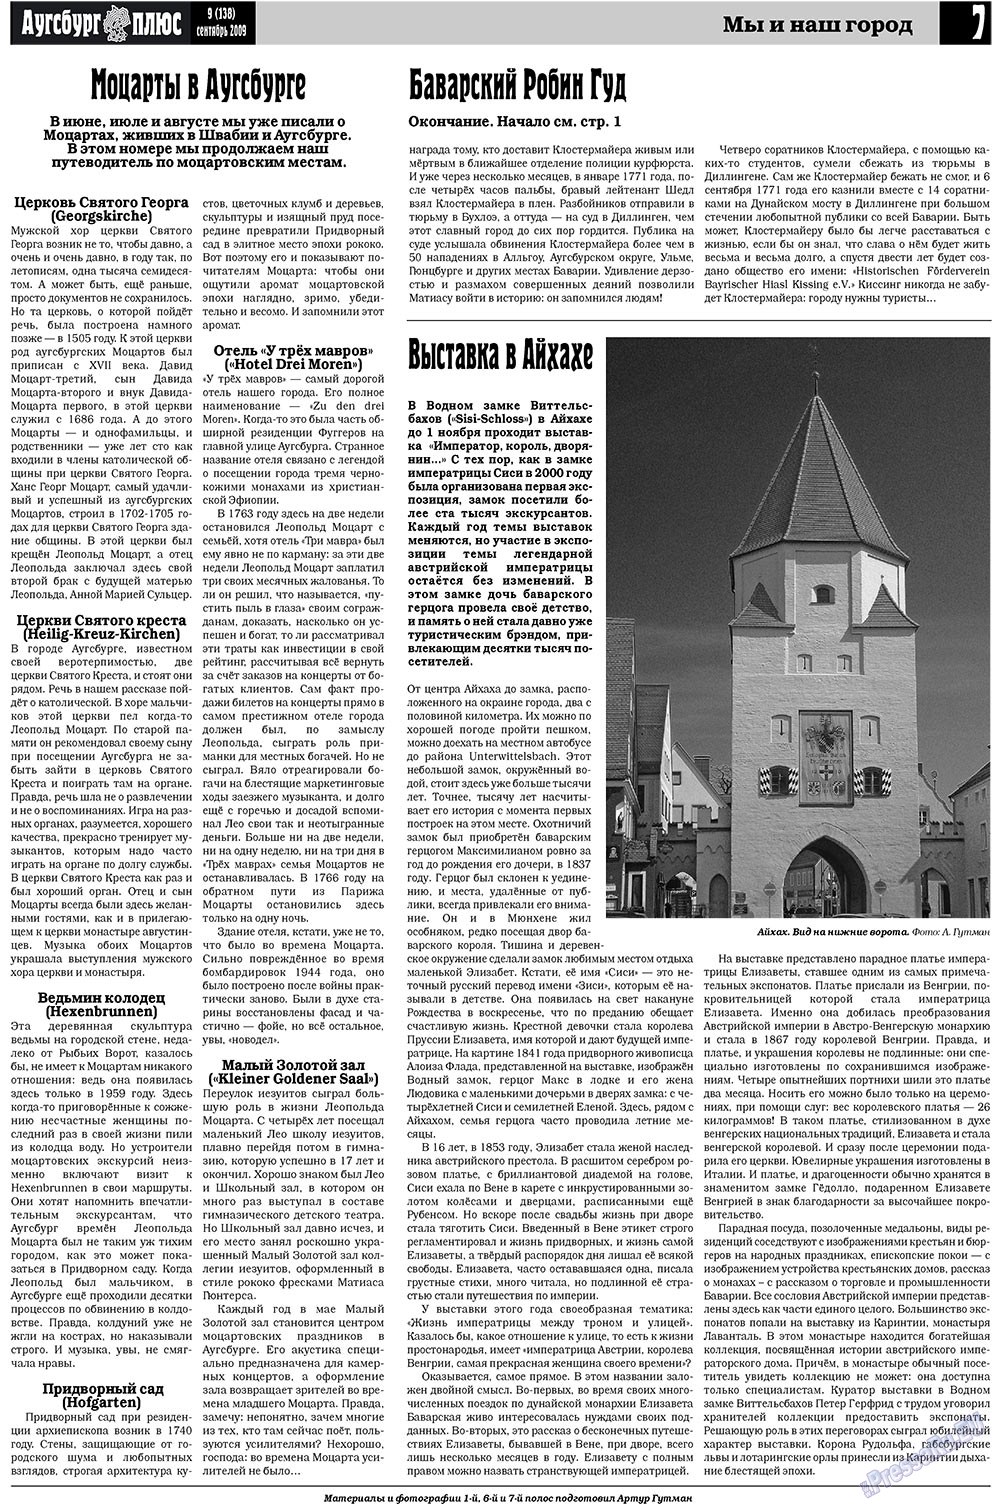 Германия плюс (газета). 2009 год, номер 9, стр. 9